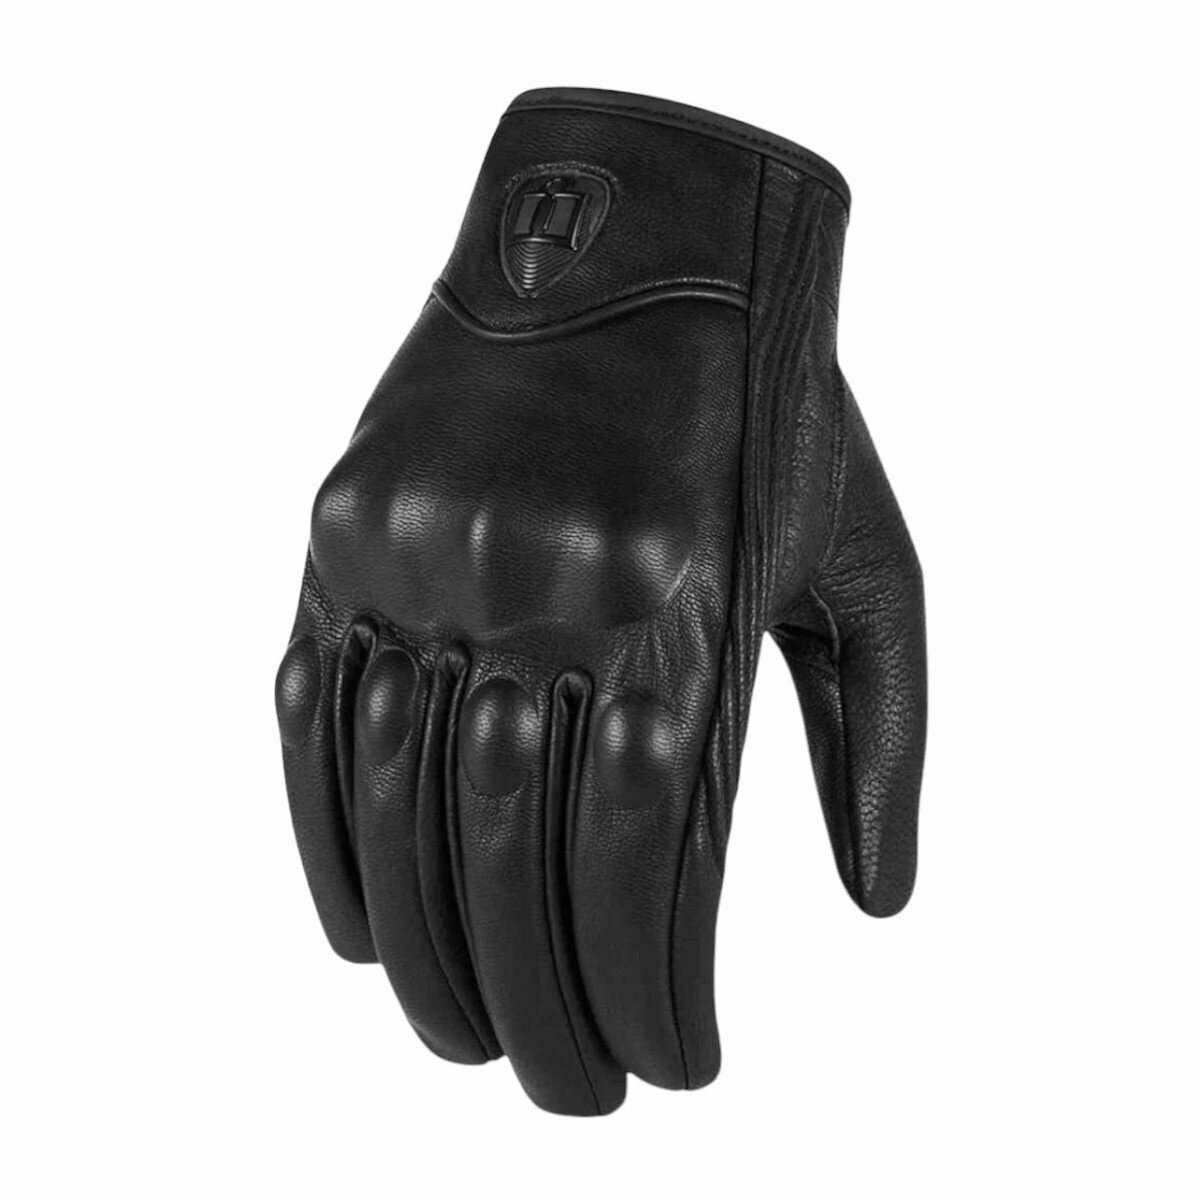 Мотоперчатки перчатки кожаные Y-12 для мотоциклиста на мотоцикл скутер мопед квадроцикл, черные, 2XL